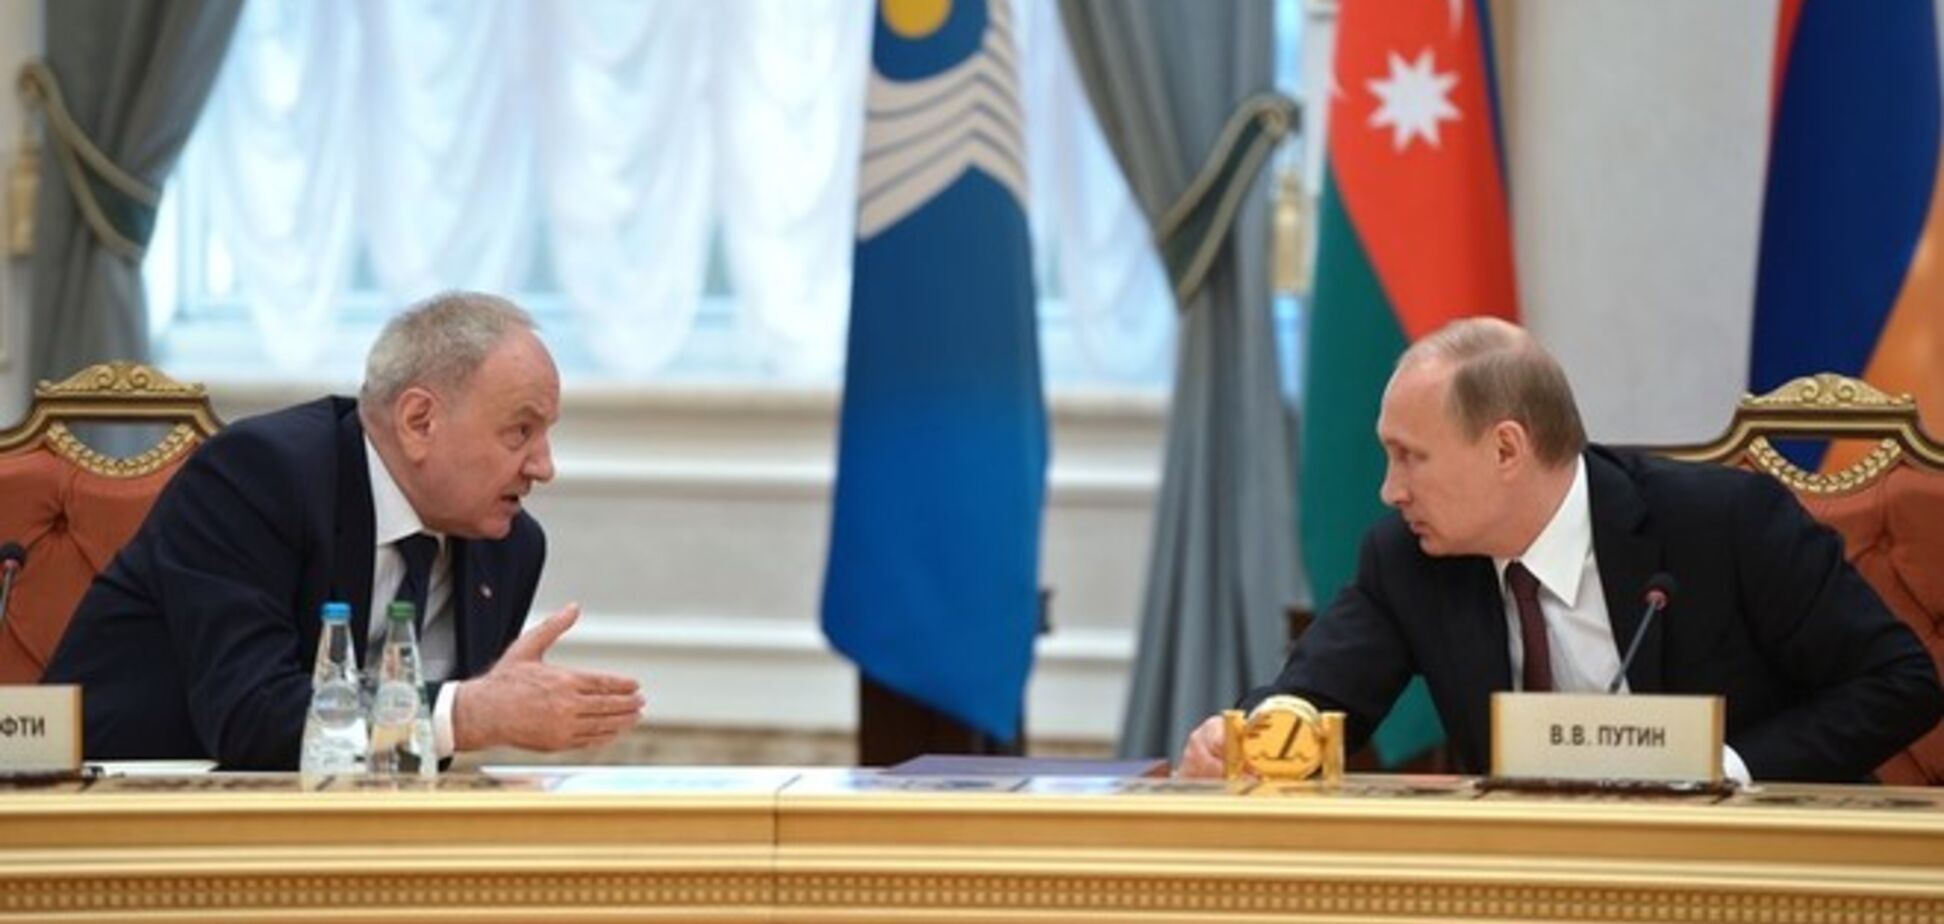 Путин чуть не устроил мордобой с президентом Молдовы в Минске - российские СМИ